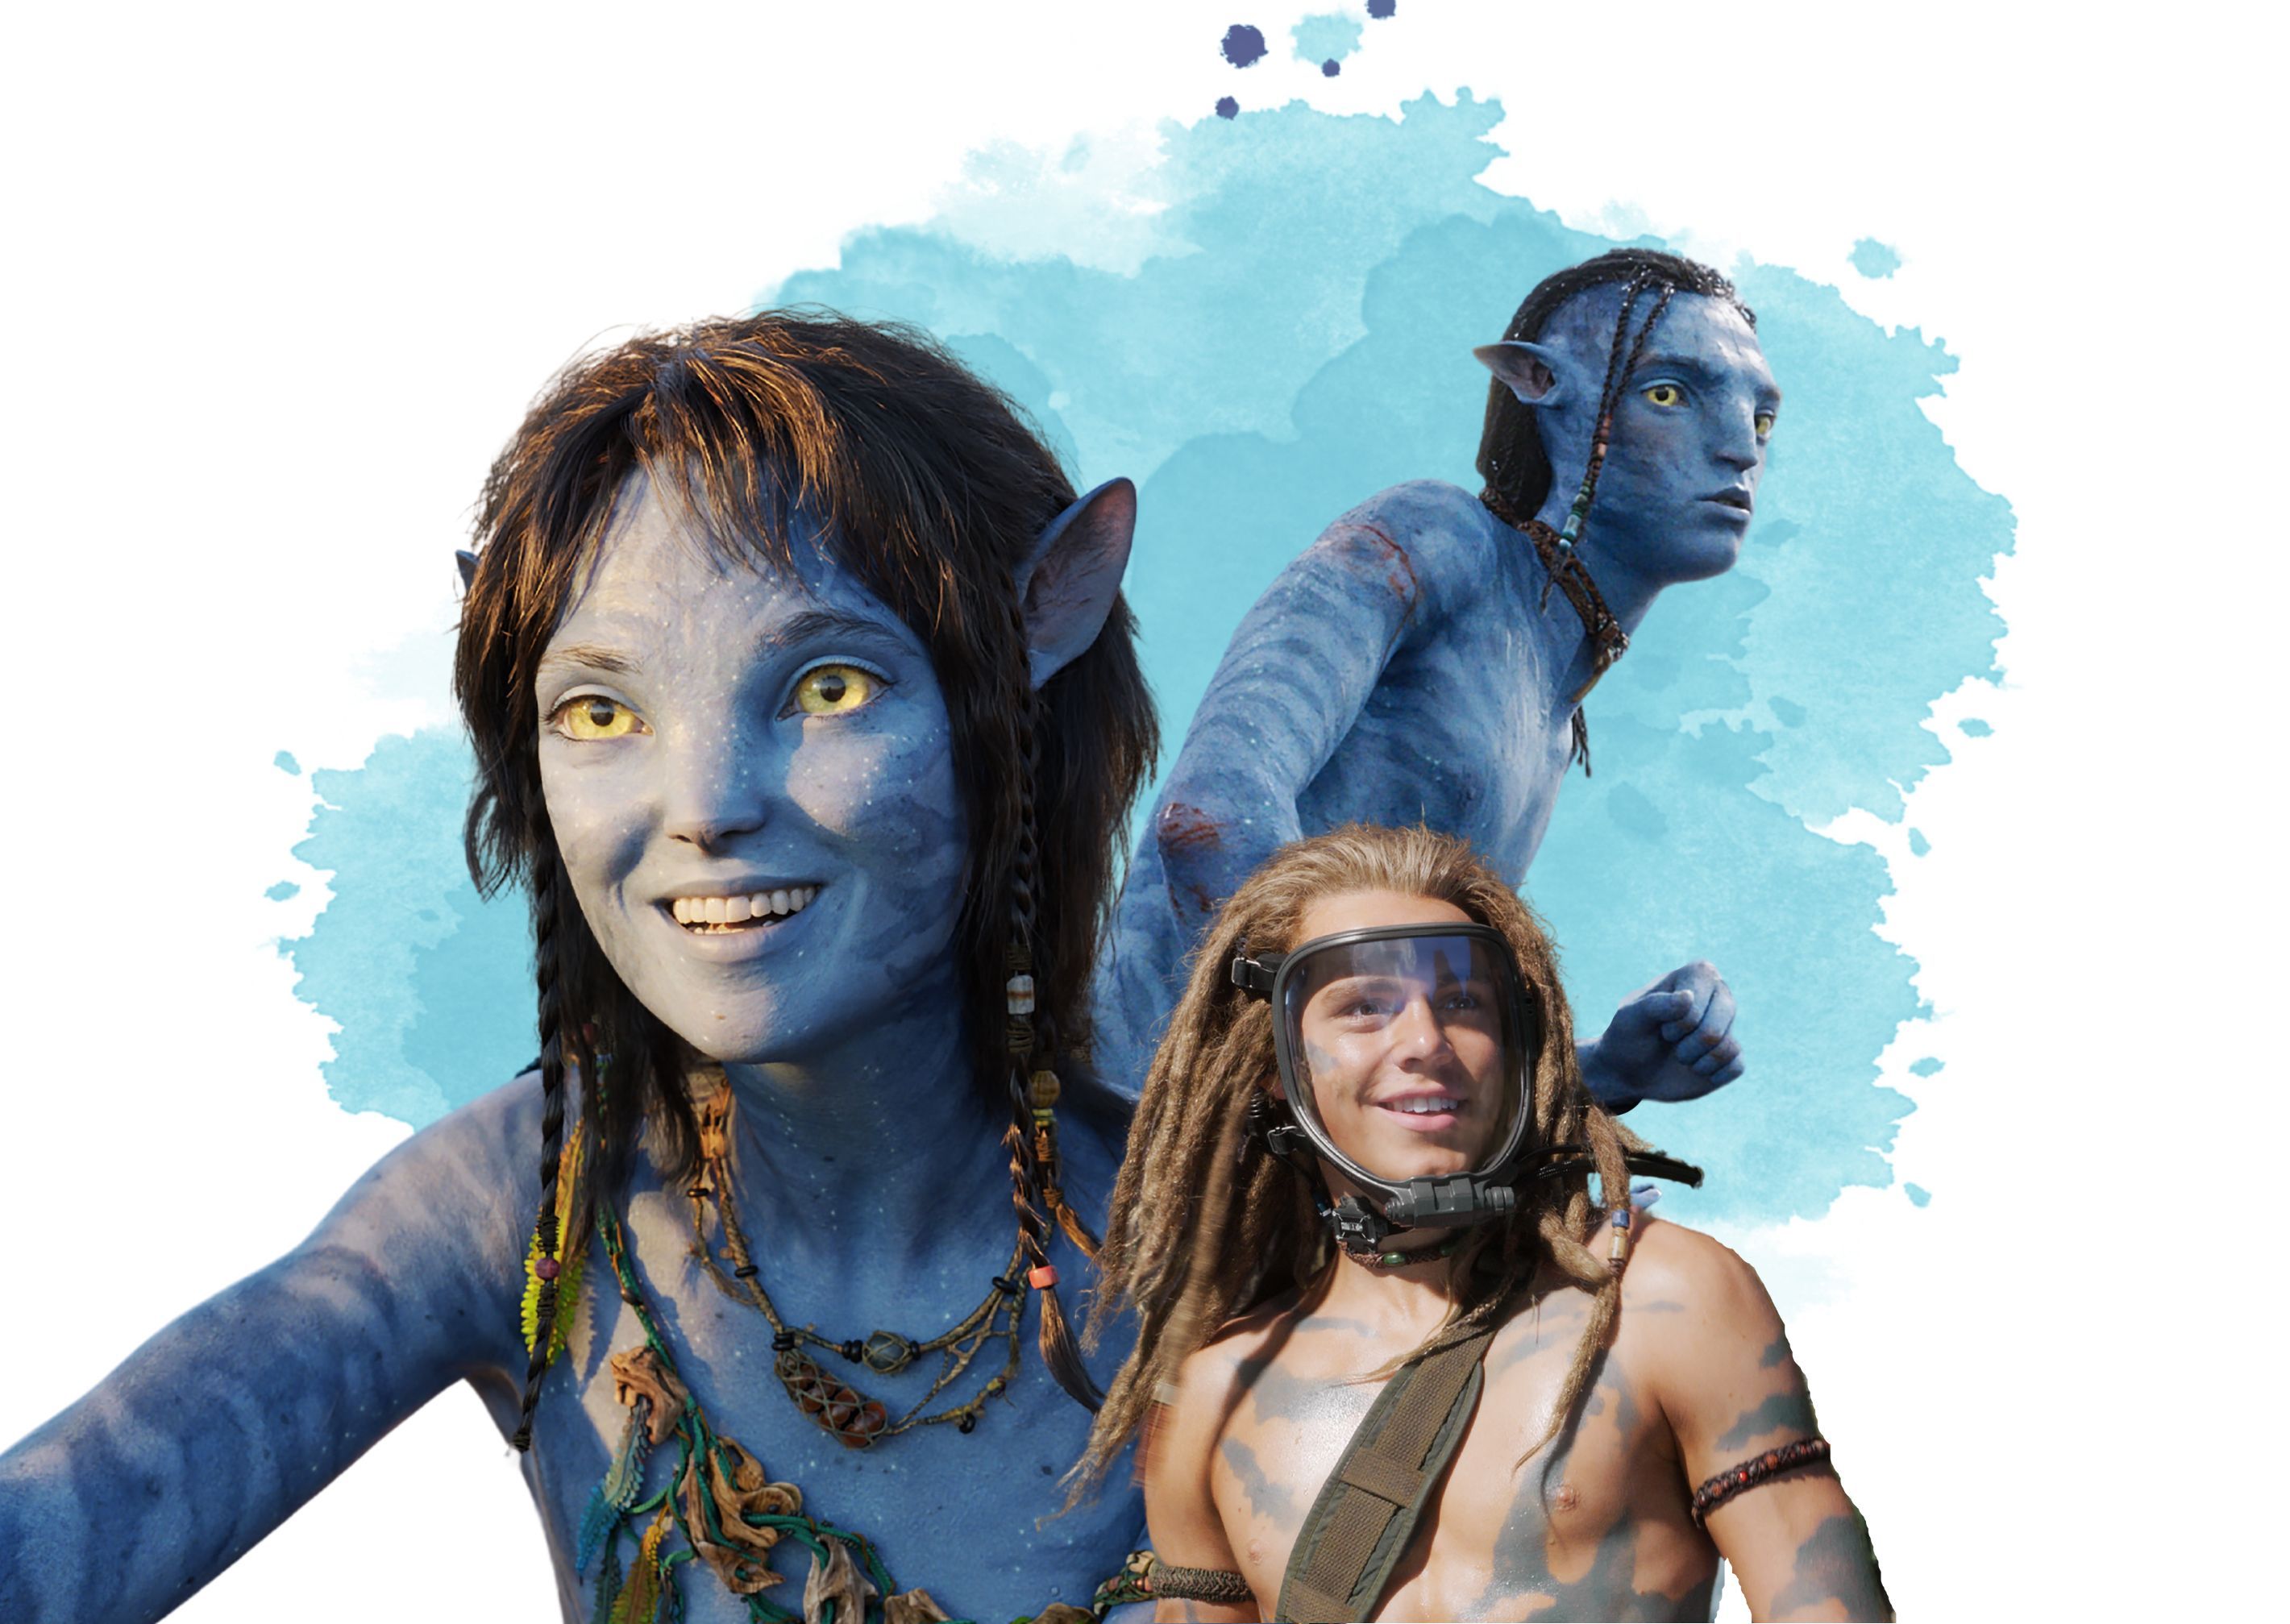 Avatar 3 đã chính thức ra mắt! Hãy cùng khám phá thế giới tuyệt đẹp của Pandora và tiếp tục đón nhận những câu chuyện đầy kịch tính và sự lột tả tuyệt vời từ nhà làm phim đẳng cấp James Cameron.